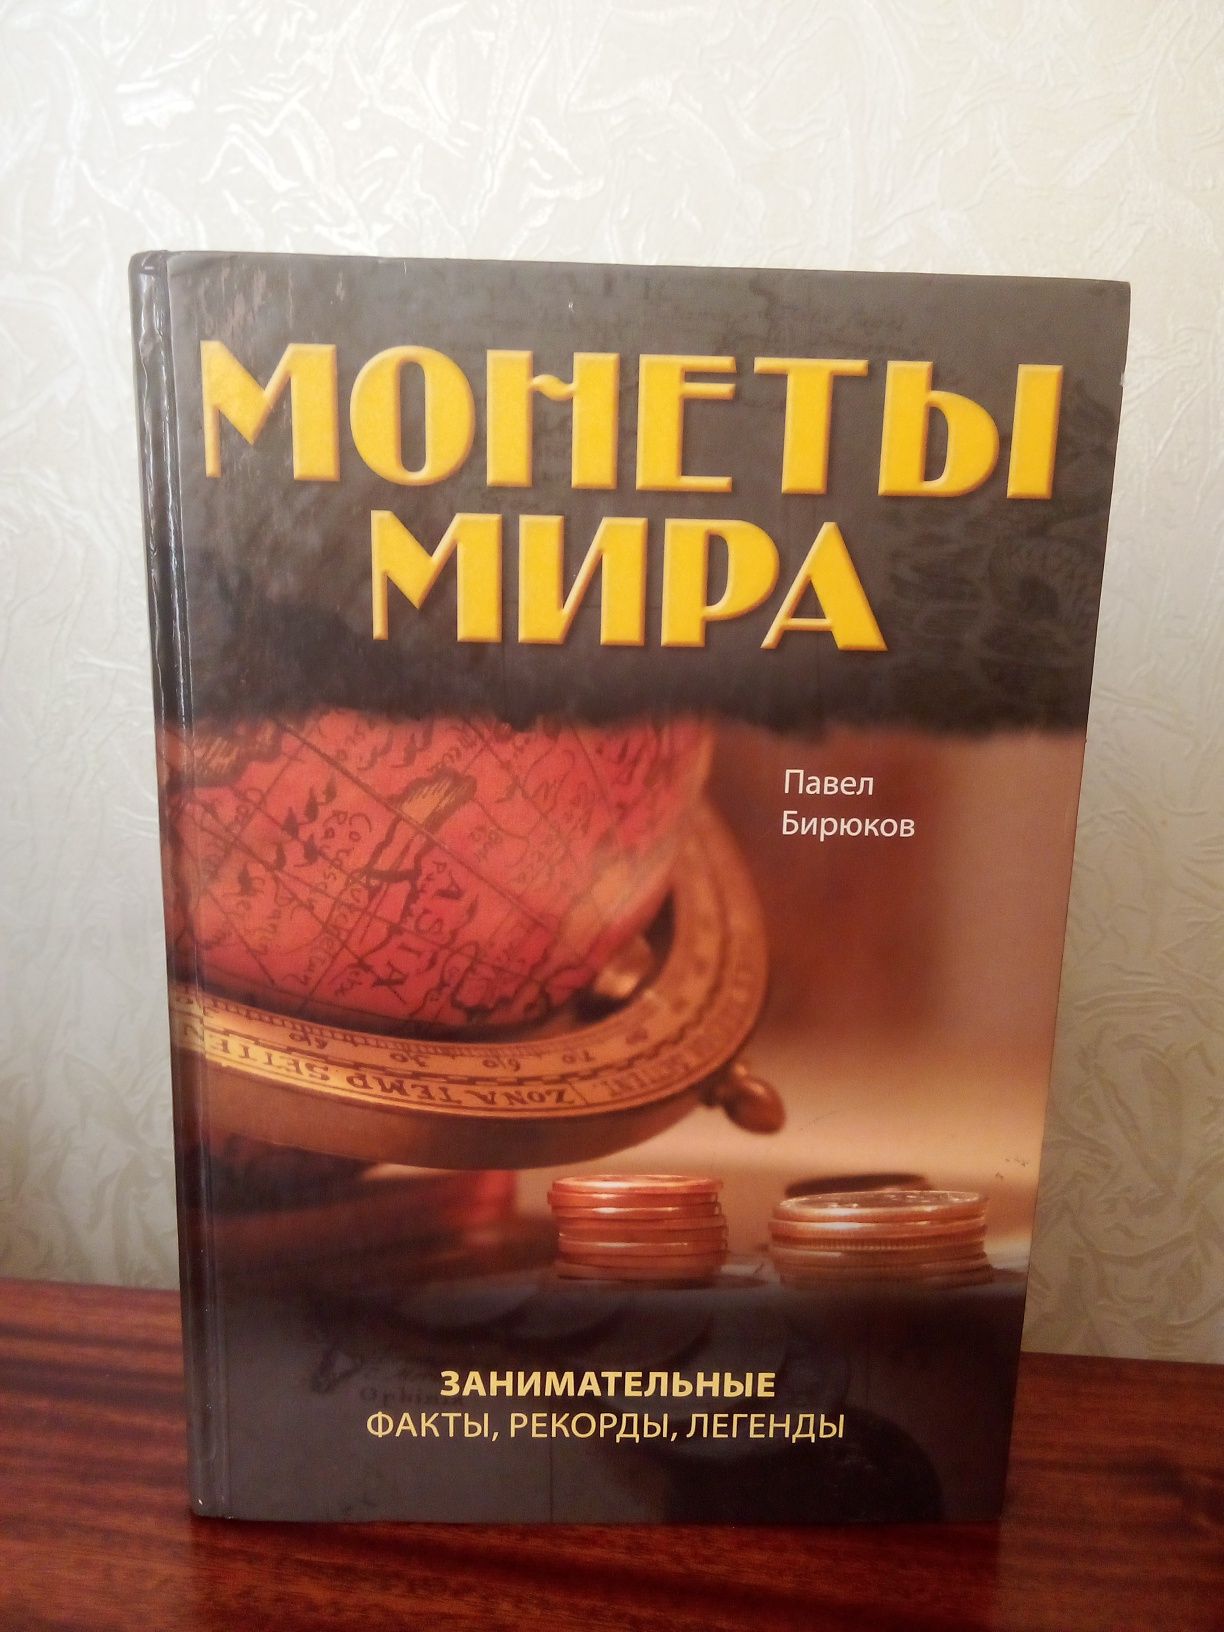 Книга "Монеты мира" Павел Бирюков